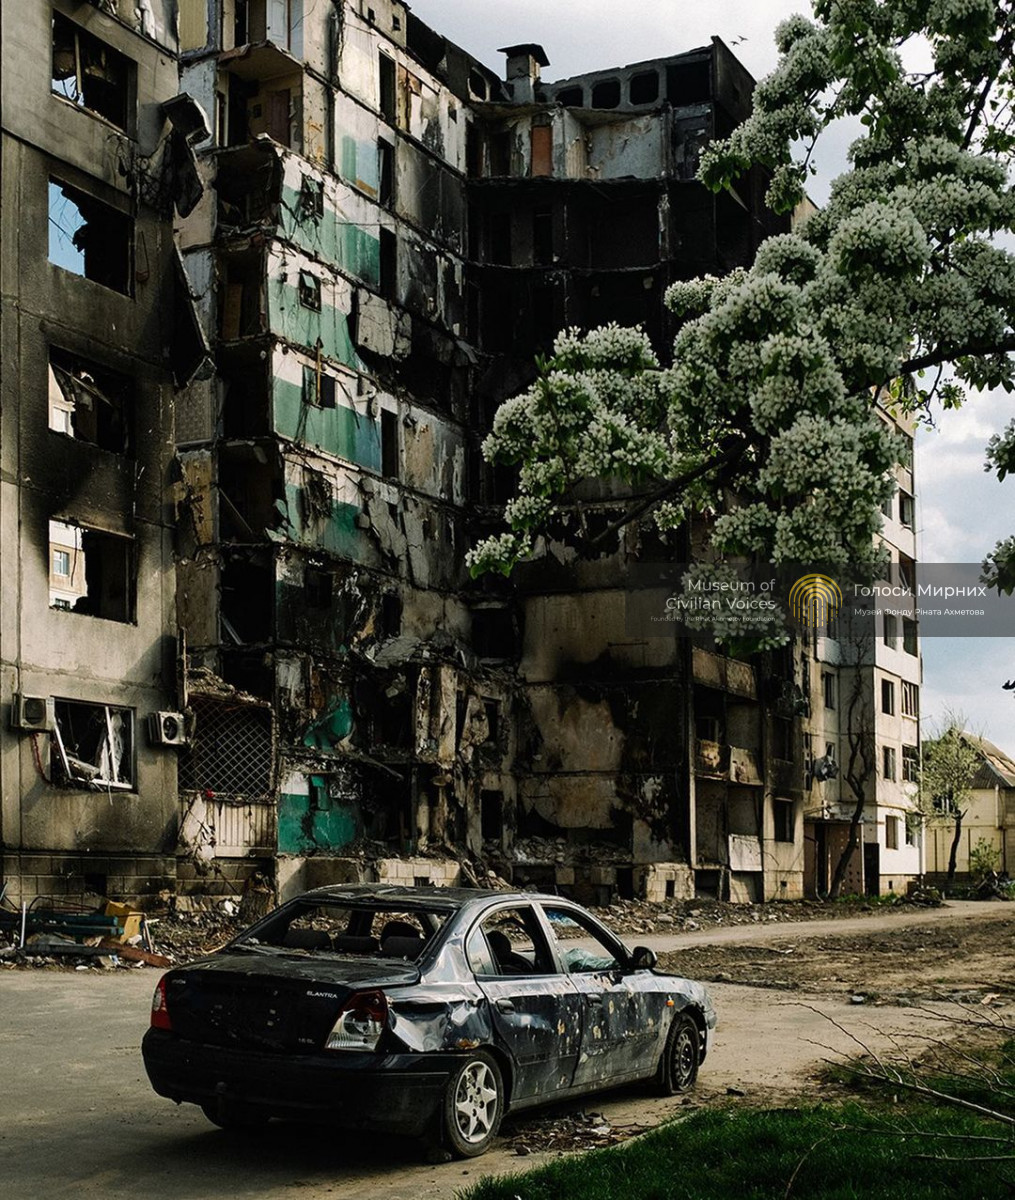 Світ після: фотохроніка Романа Пашковського